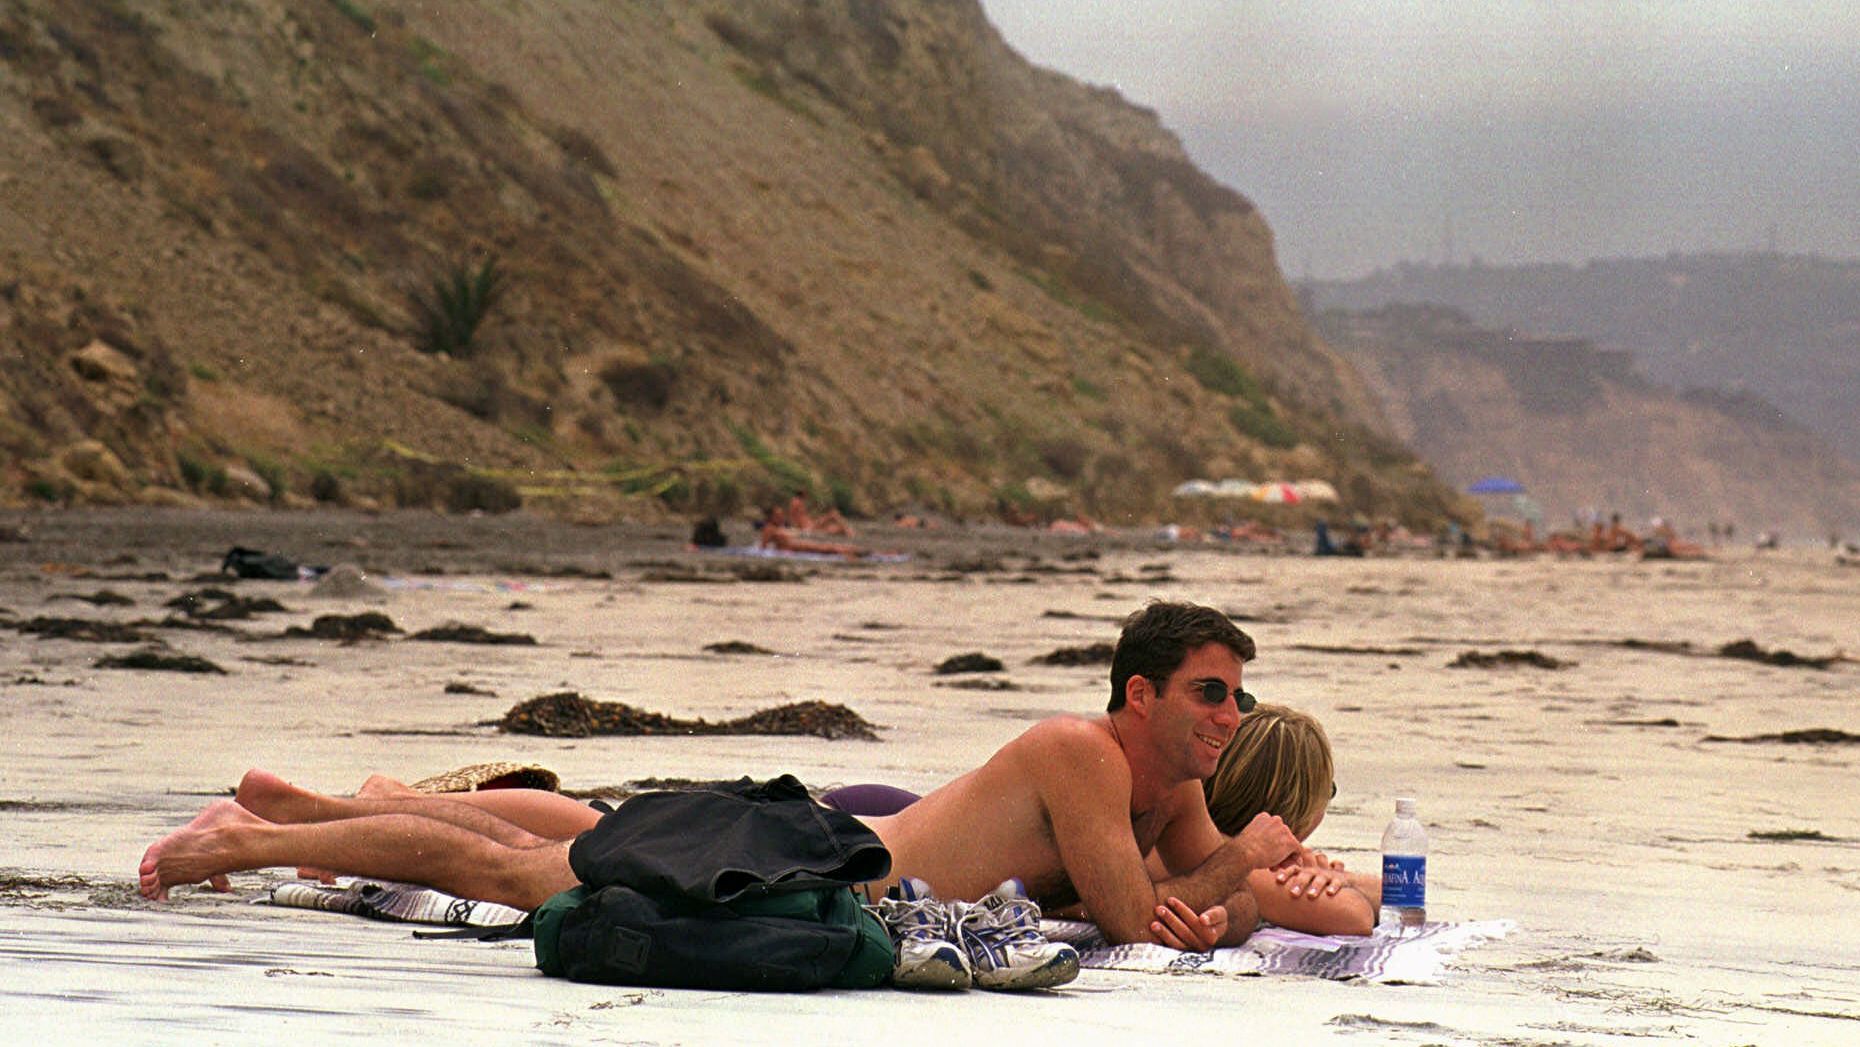 1860px x 1047px - 20 best nude beaches around the world | CNN